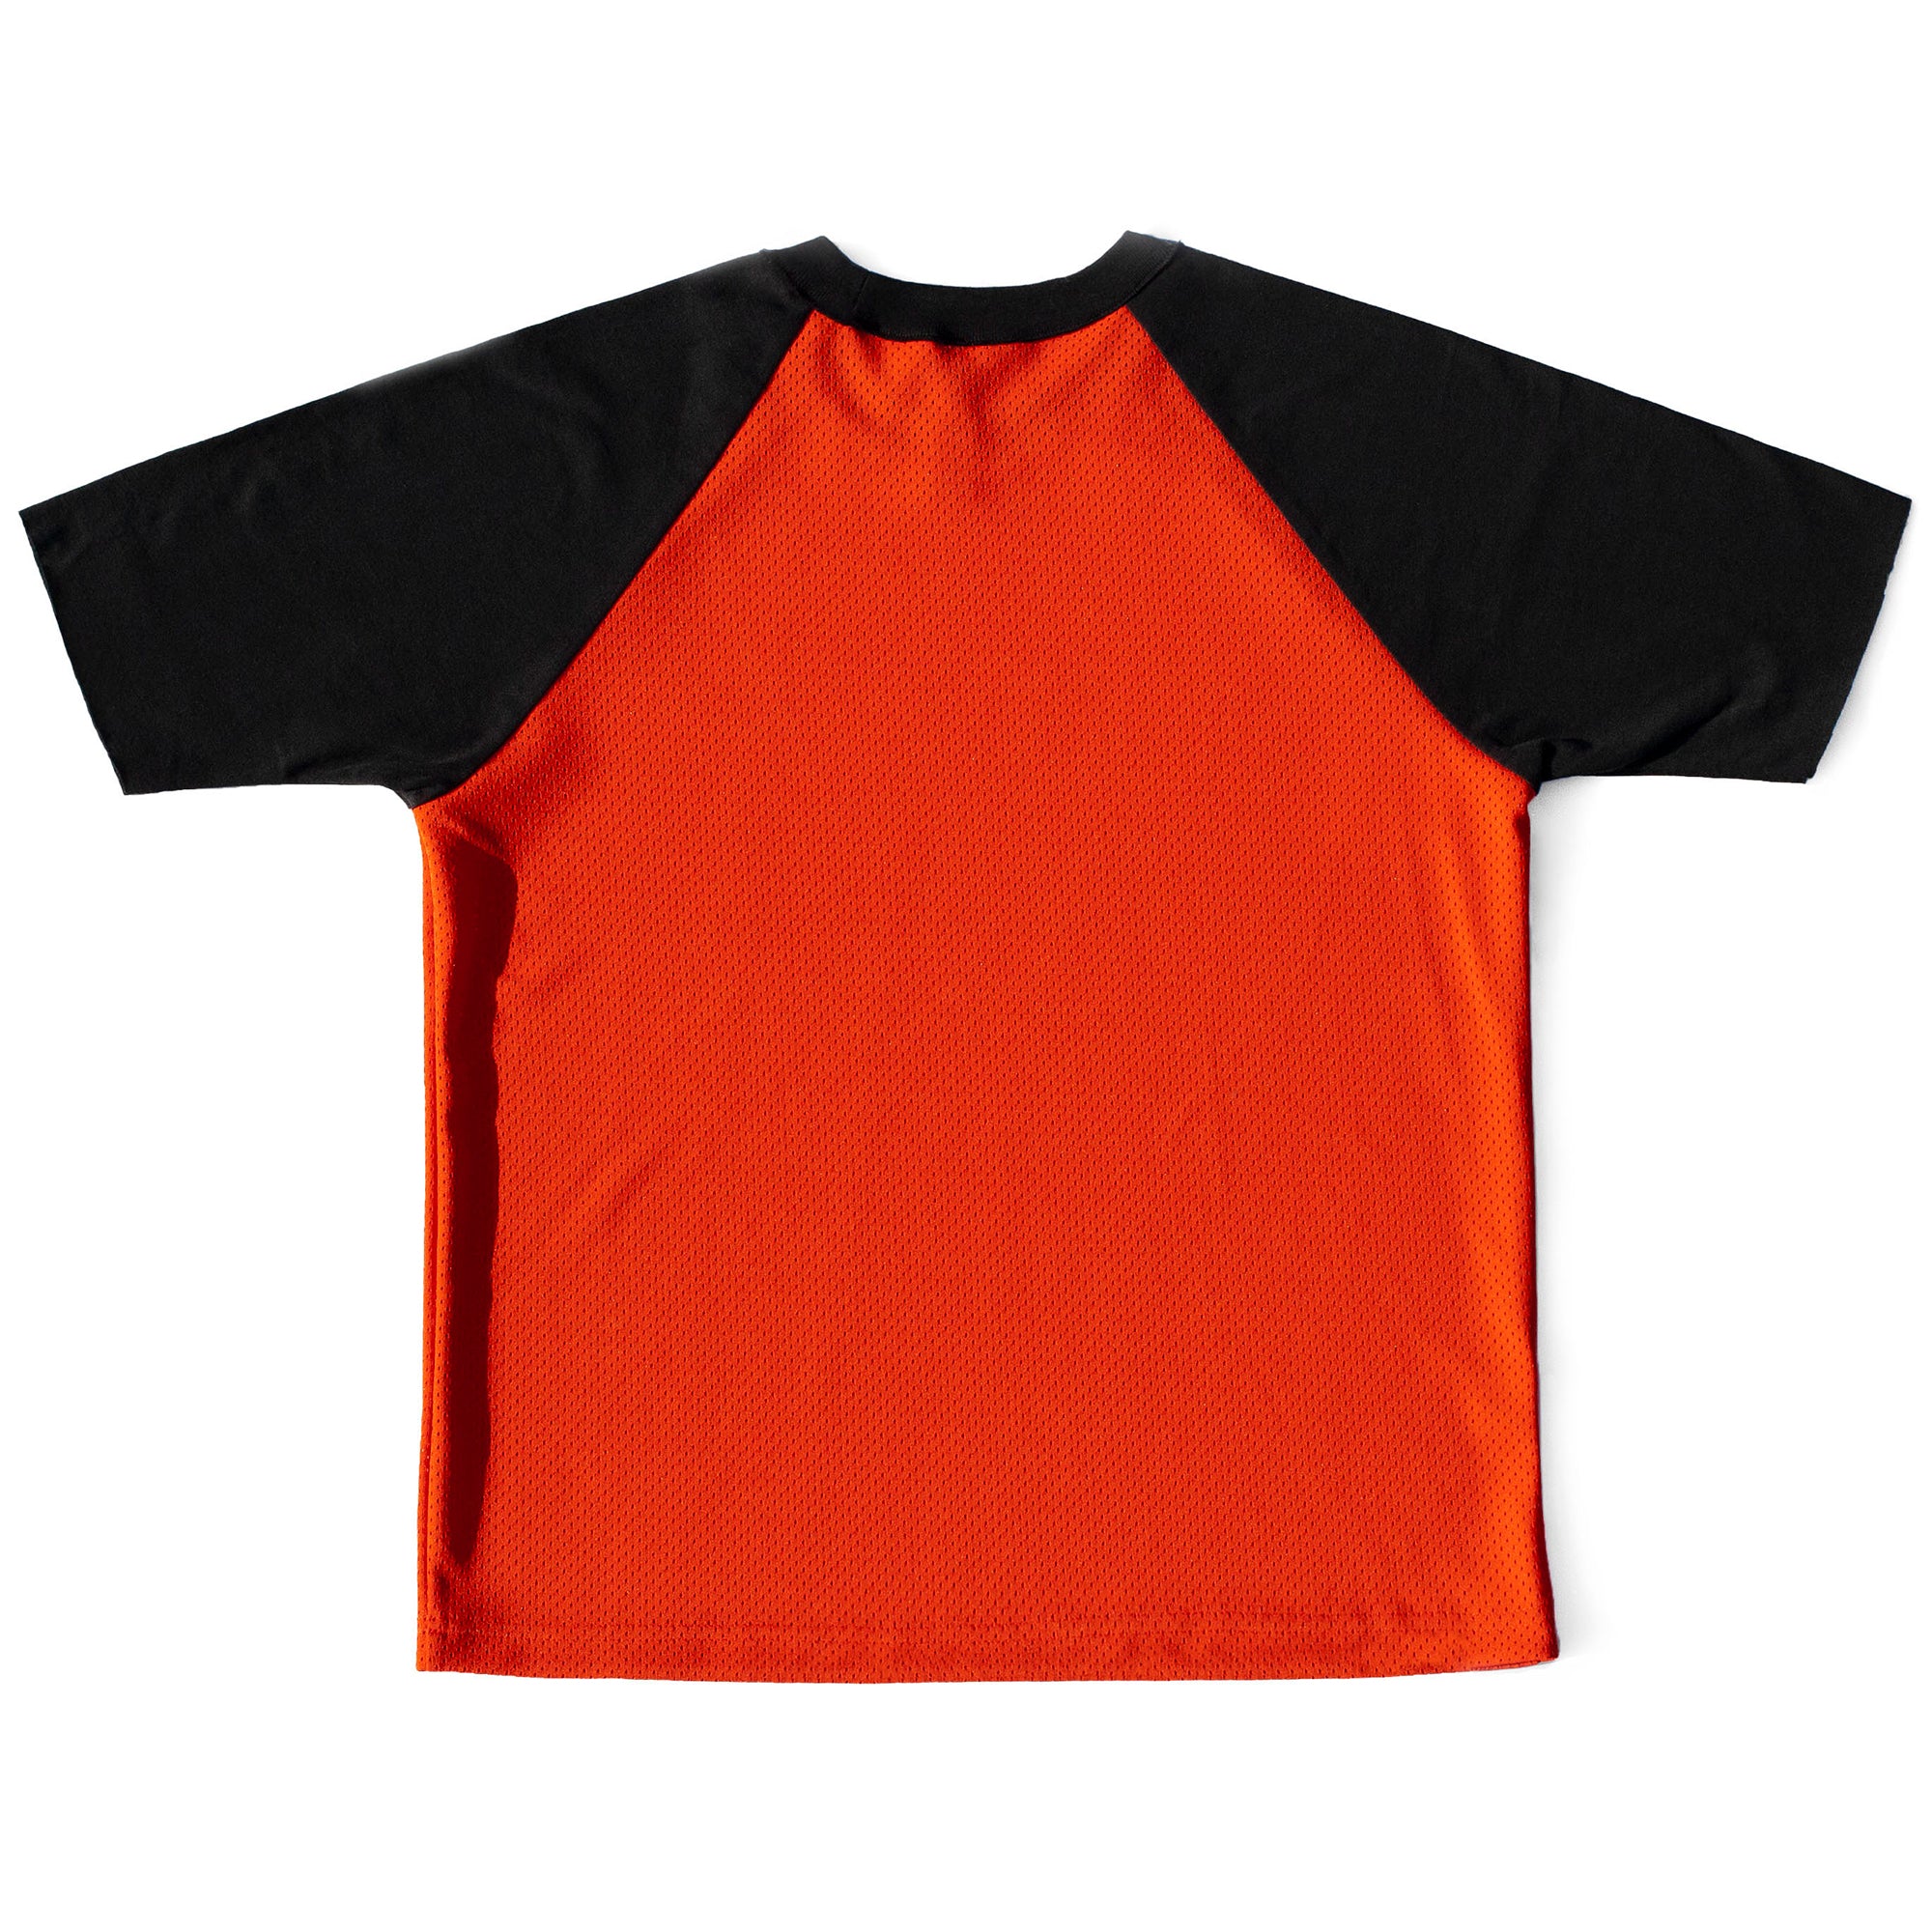 black and orange raglan shirt